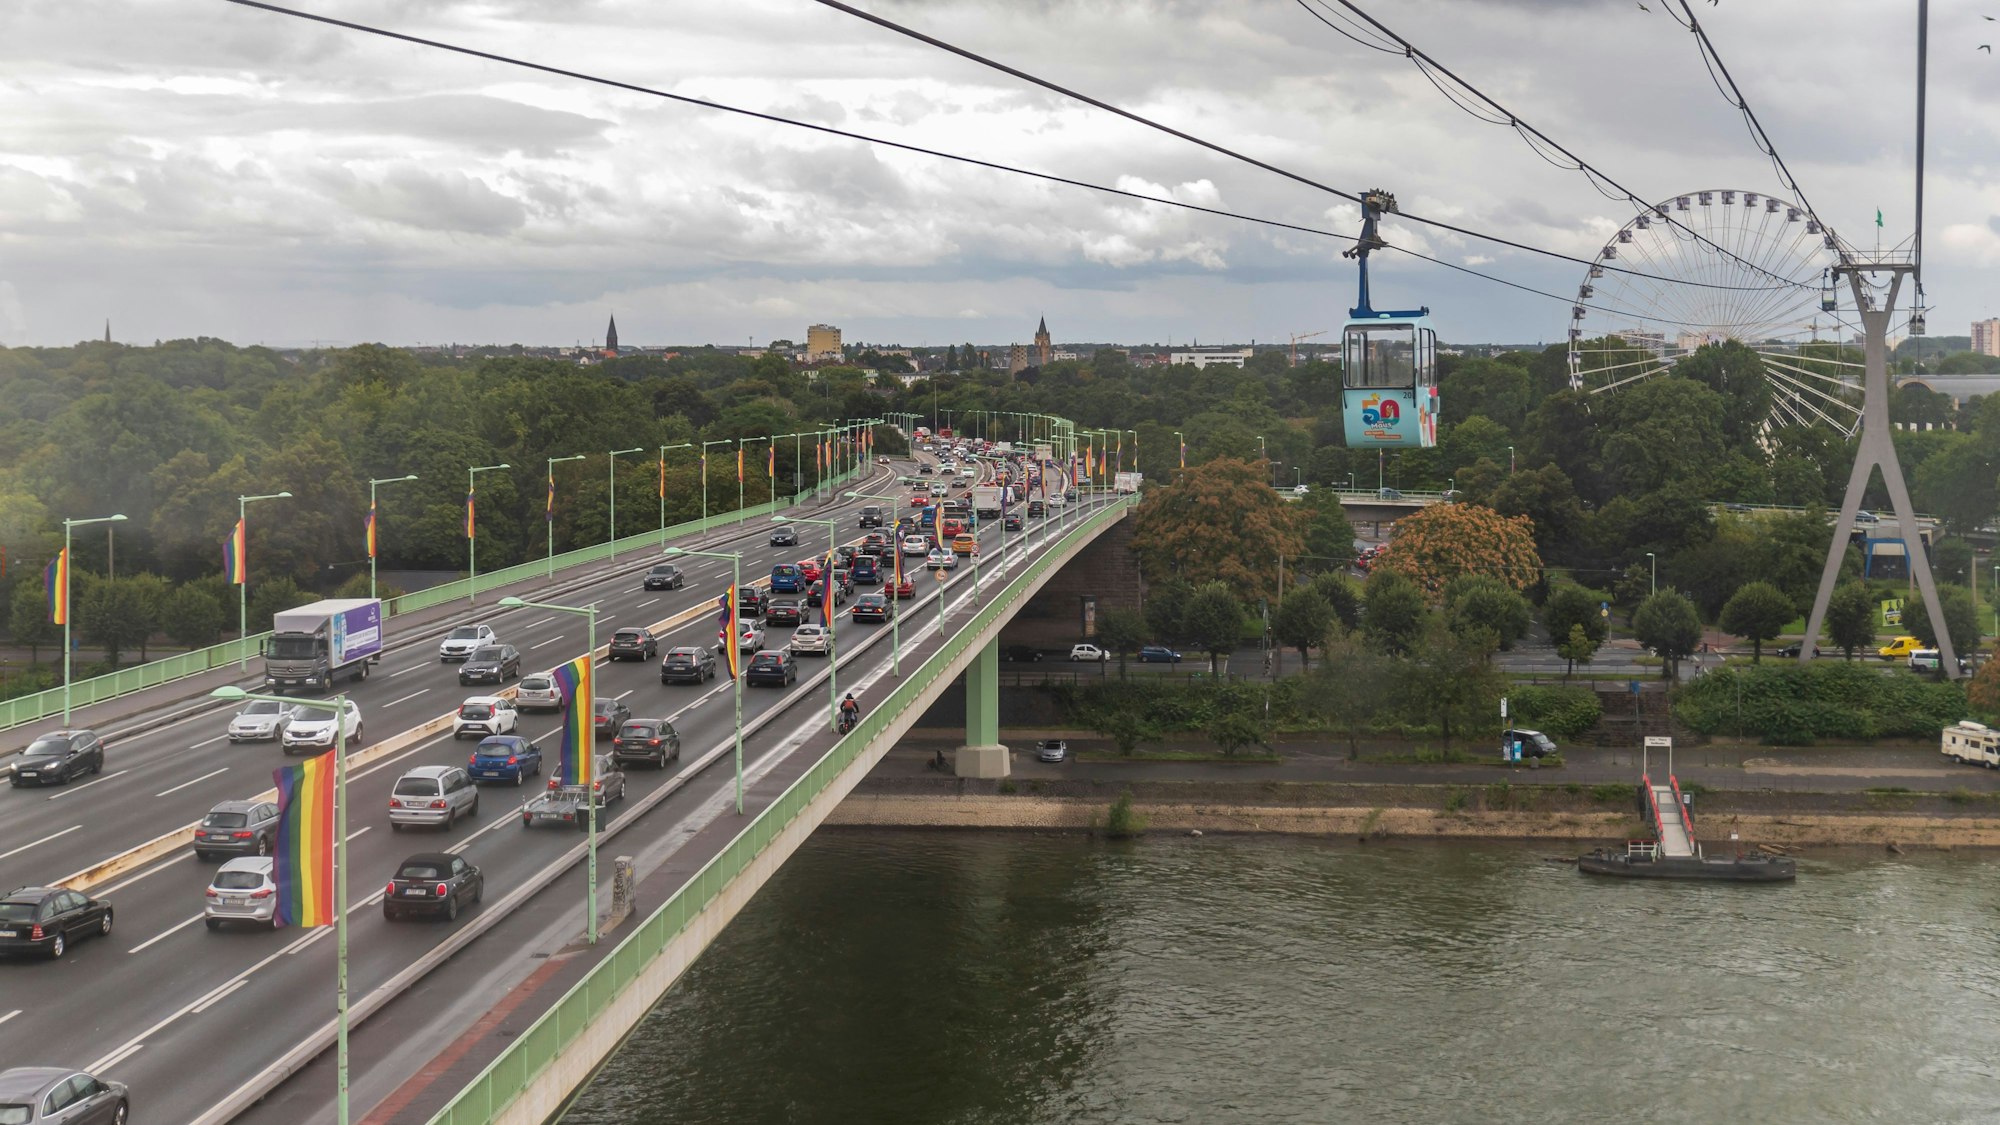 Die Kölner Zoobrücke am 27. August 2021.